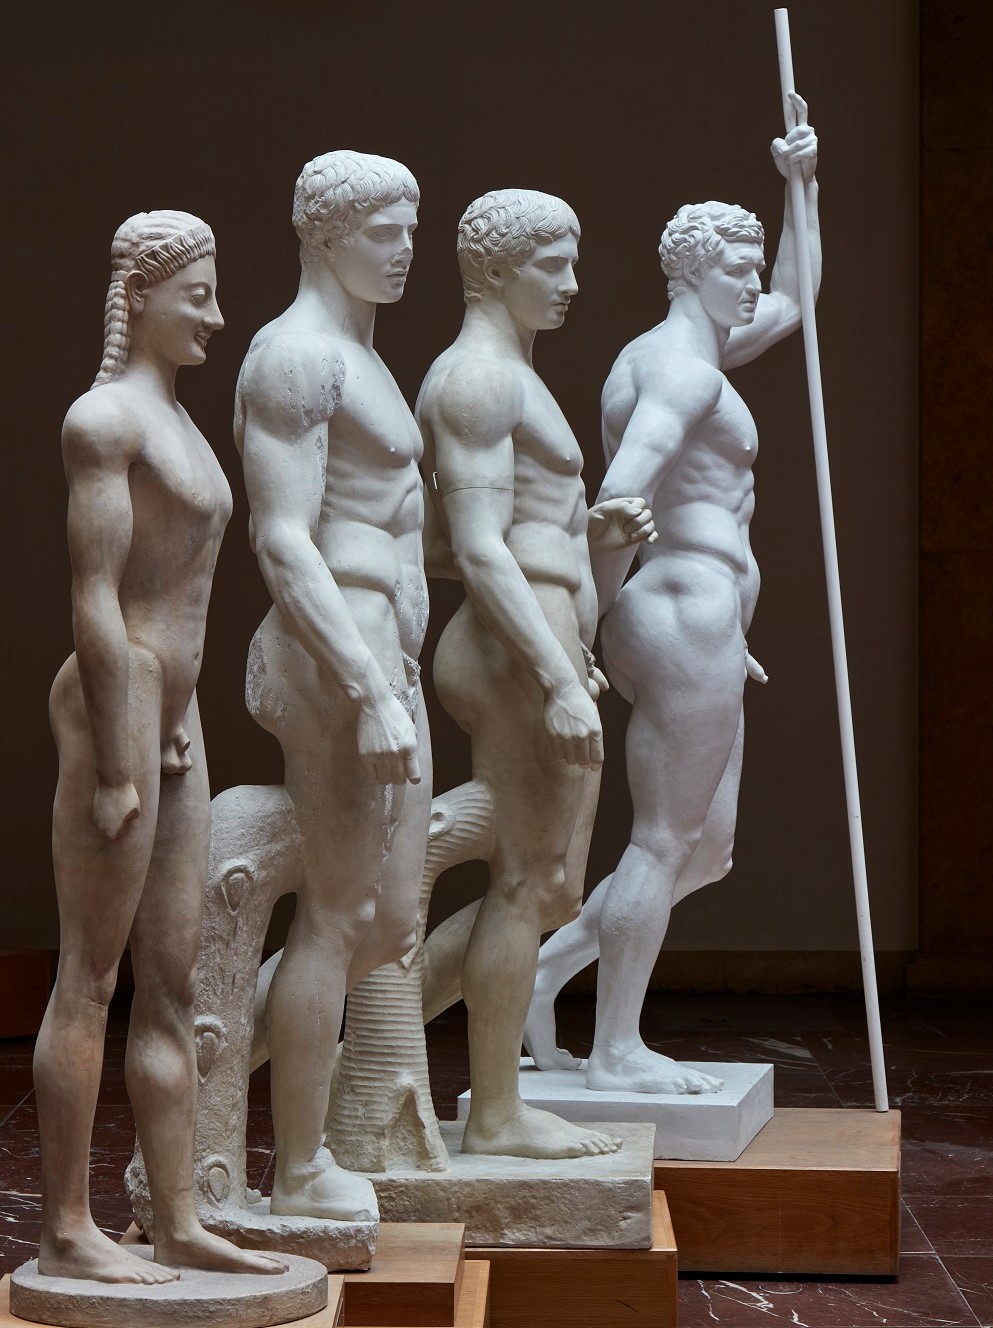 Vier nackte männliche Statuen stehen schräg nach hinten versetzt nebeneinander